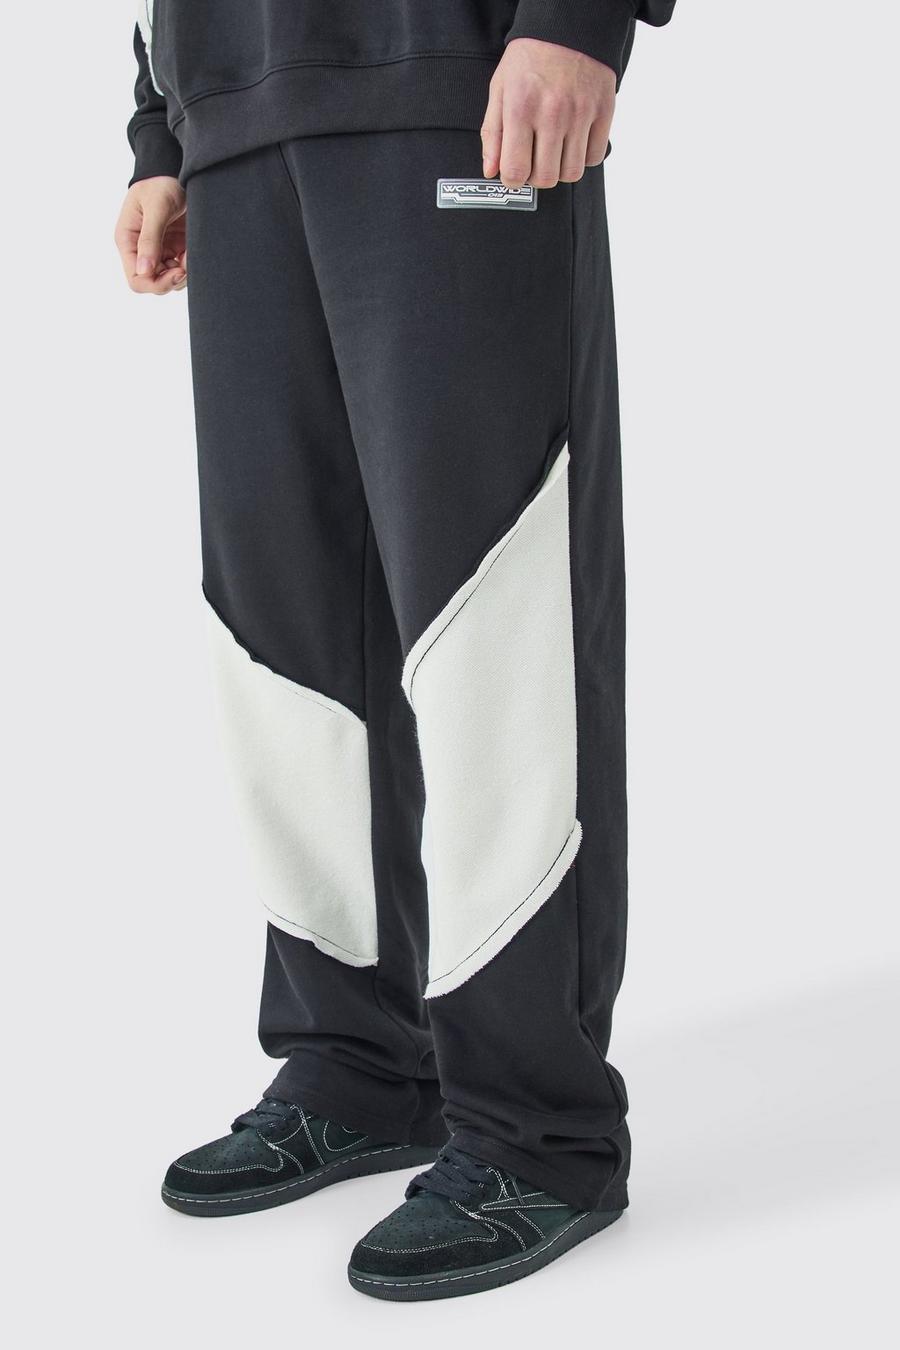 Pantalón deportivo Tall holgado con panel y bajo sin acabar, Black image number 1